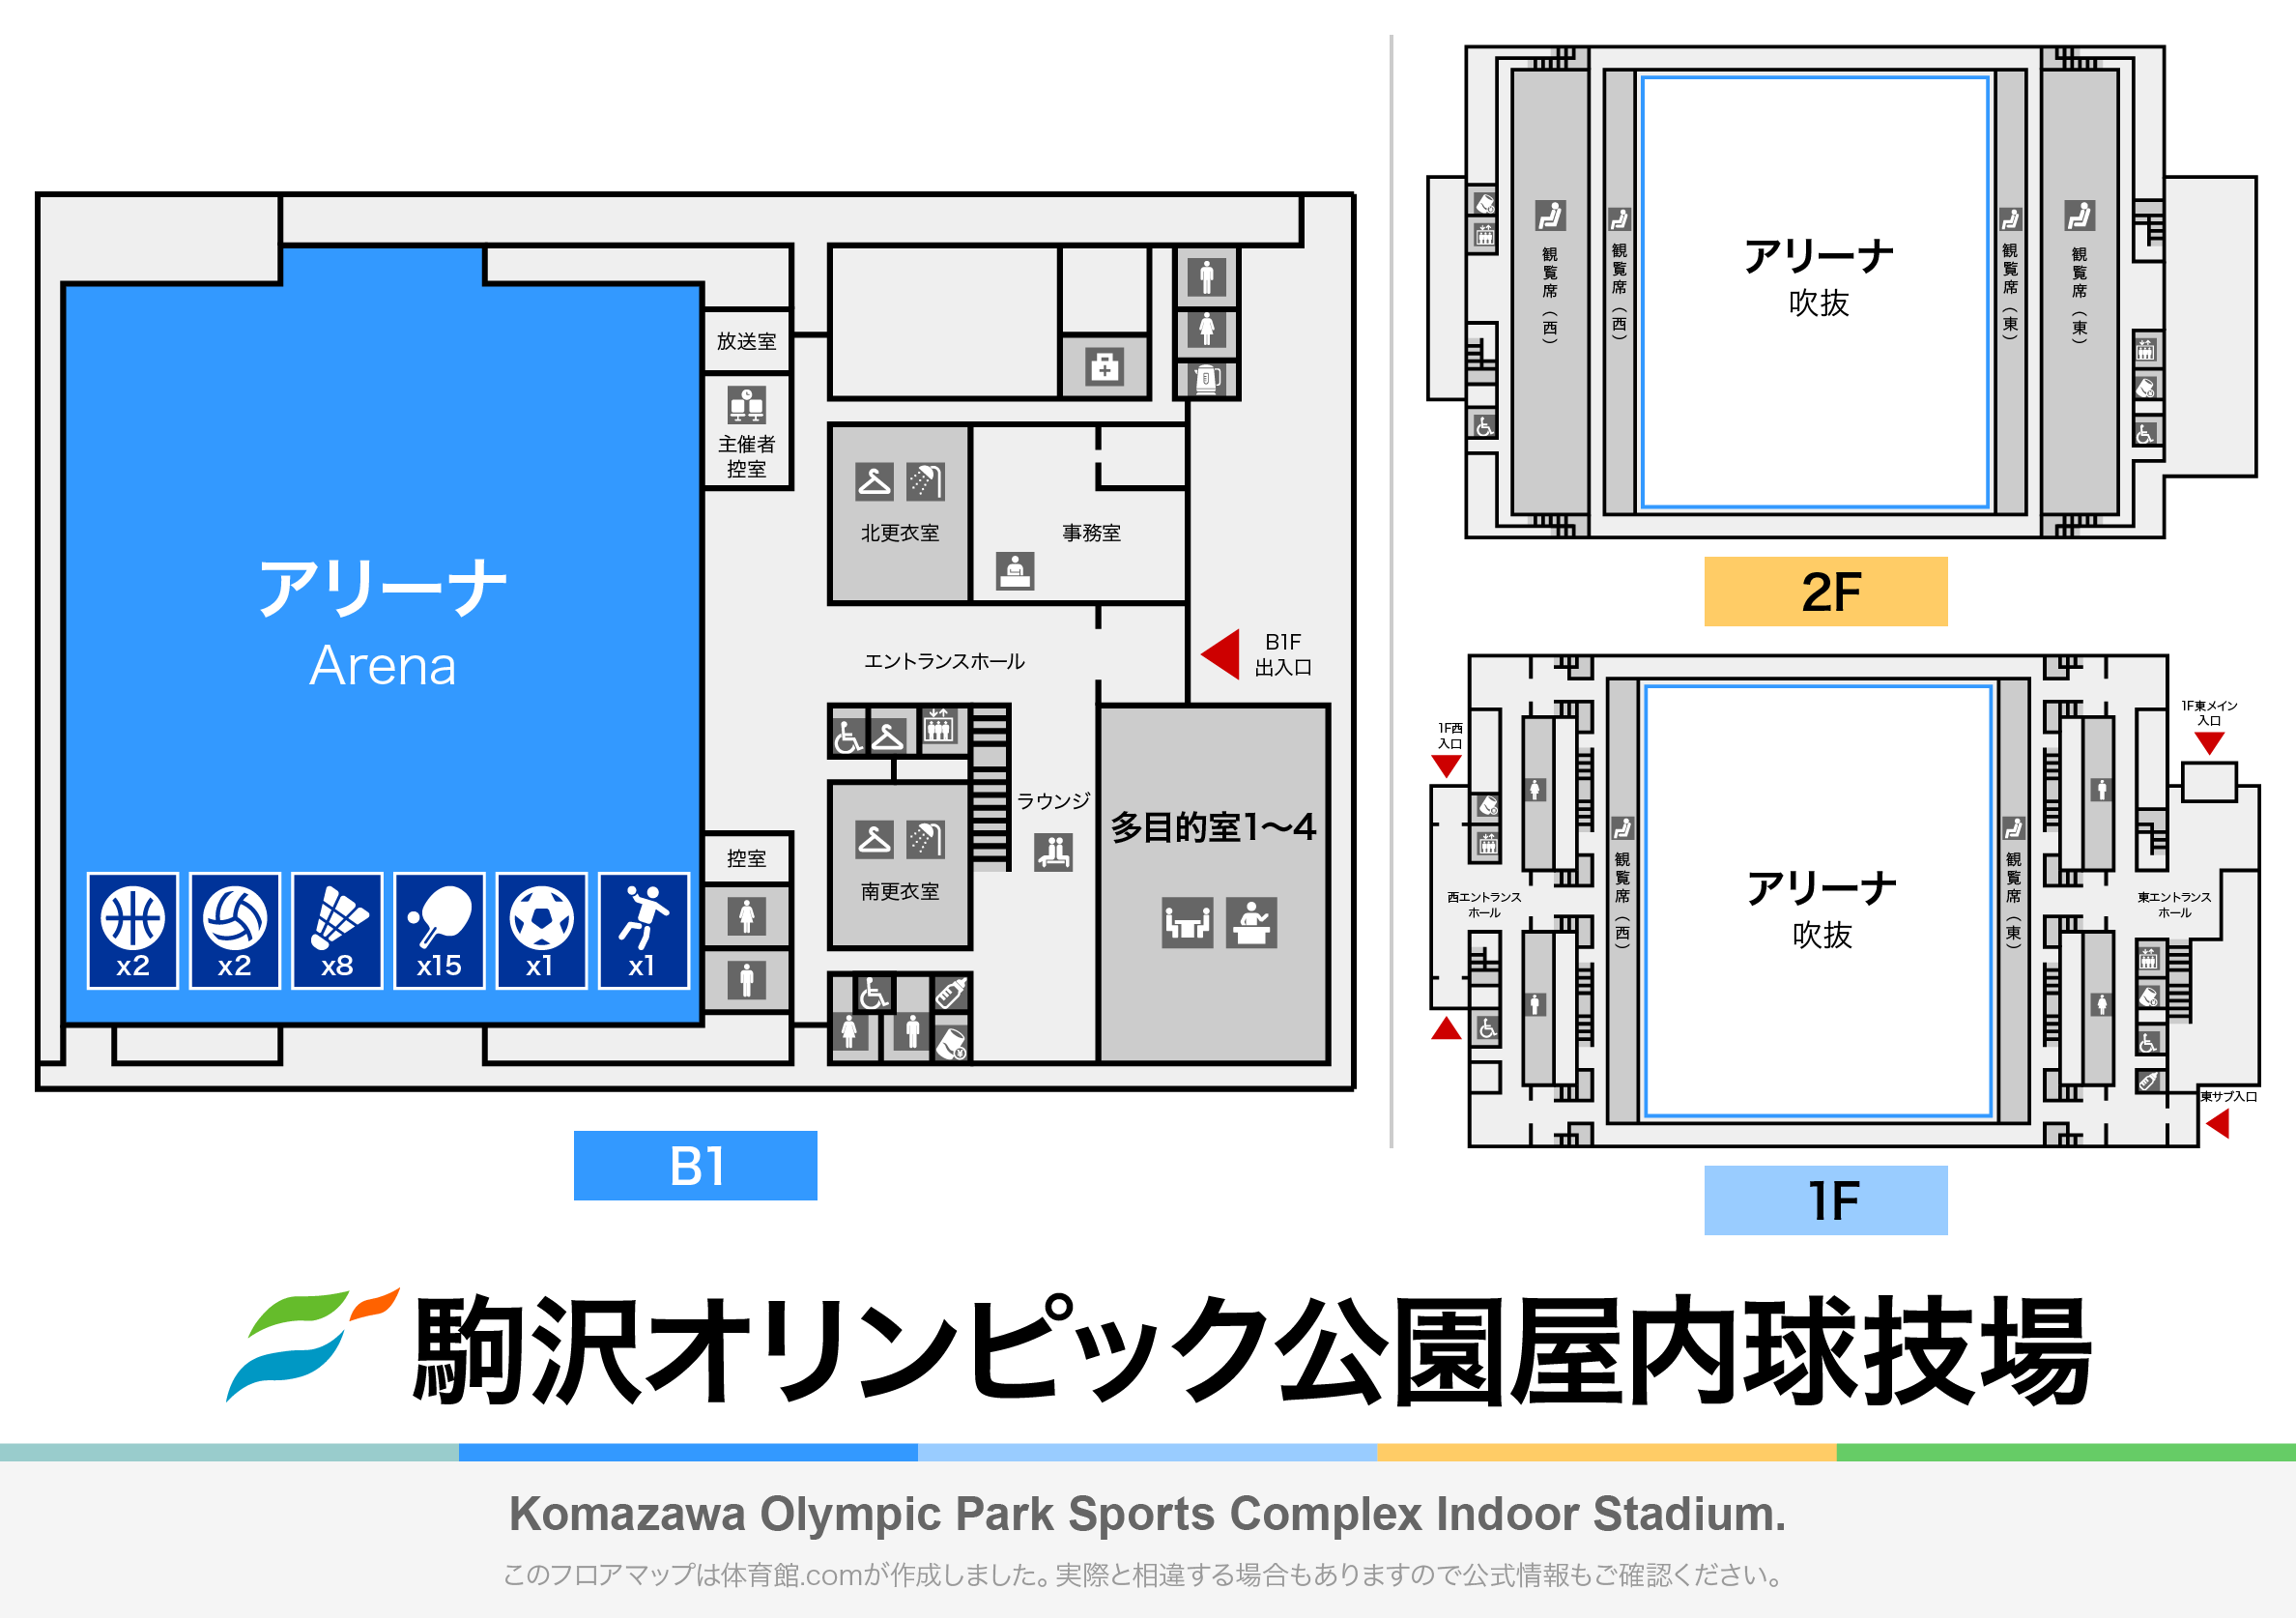 駒沢オリンピック公園 屋内球技場のフロアマップ・体育館